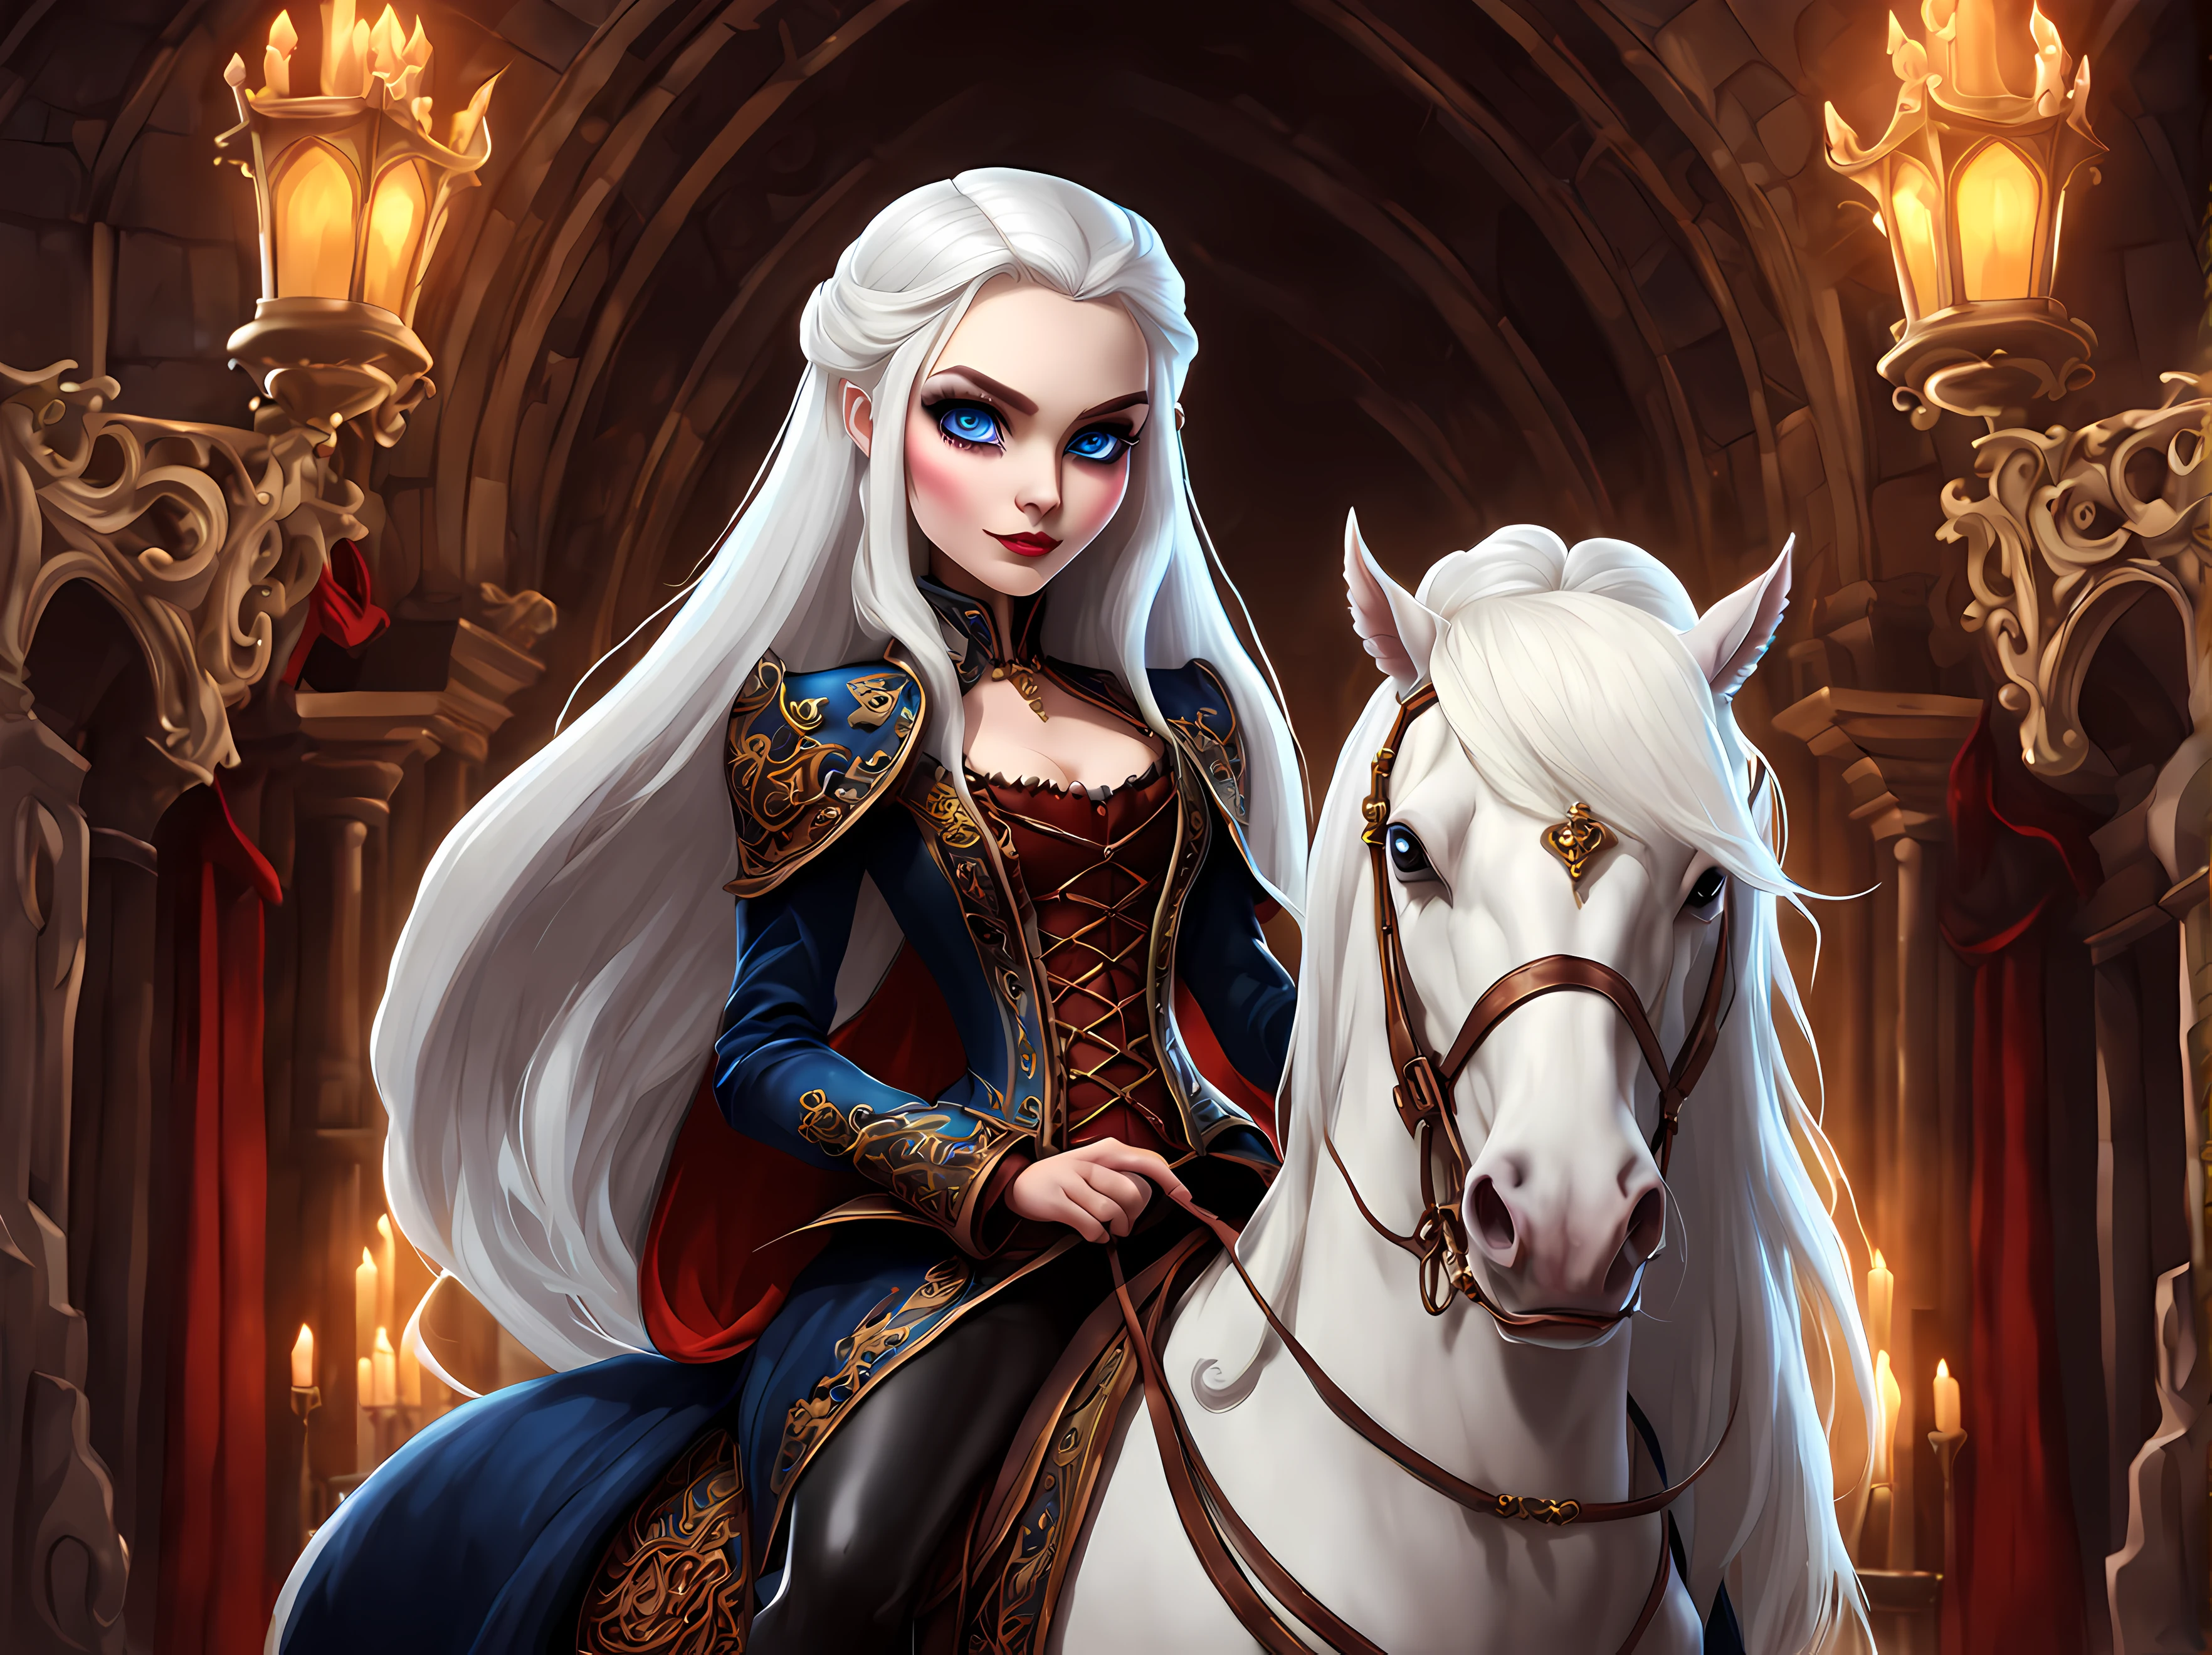 dessin animé mignon, MignonDessin AniméAF, (Style de dessin animé mignon:1.3) | Superbe reine vampire chevauchant un majestueux destrier royal. | La reine a de longs cheveux blancs et des yeux bleu vif. | Le harnais du cheval est un chef-d&#39;œuvre de l&#39;artisanat gothique, reflétant le design vampirique complexe et orné. | Le cheval a (Crinière dorée). | Les écuries respirent l&#39;opulence, avec une architecture gothique et une atmosphère tranquille. | Une seule rose dans les cheveux de la reine. | Plus_détail